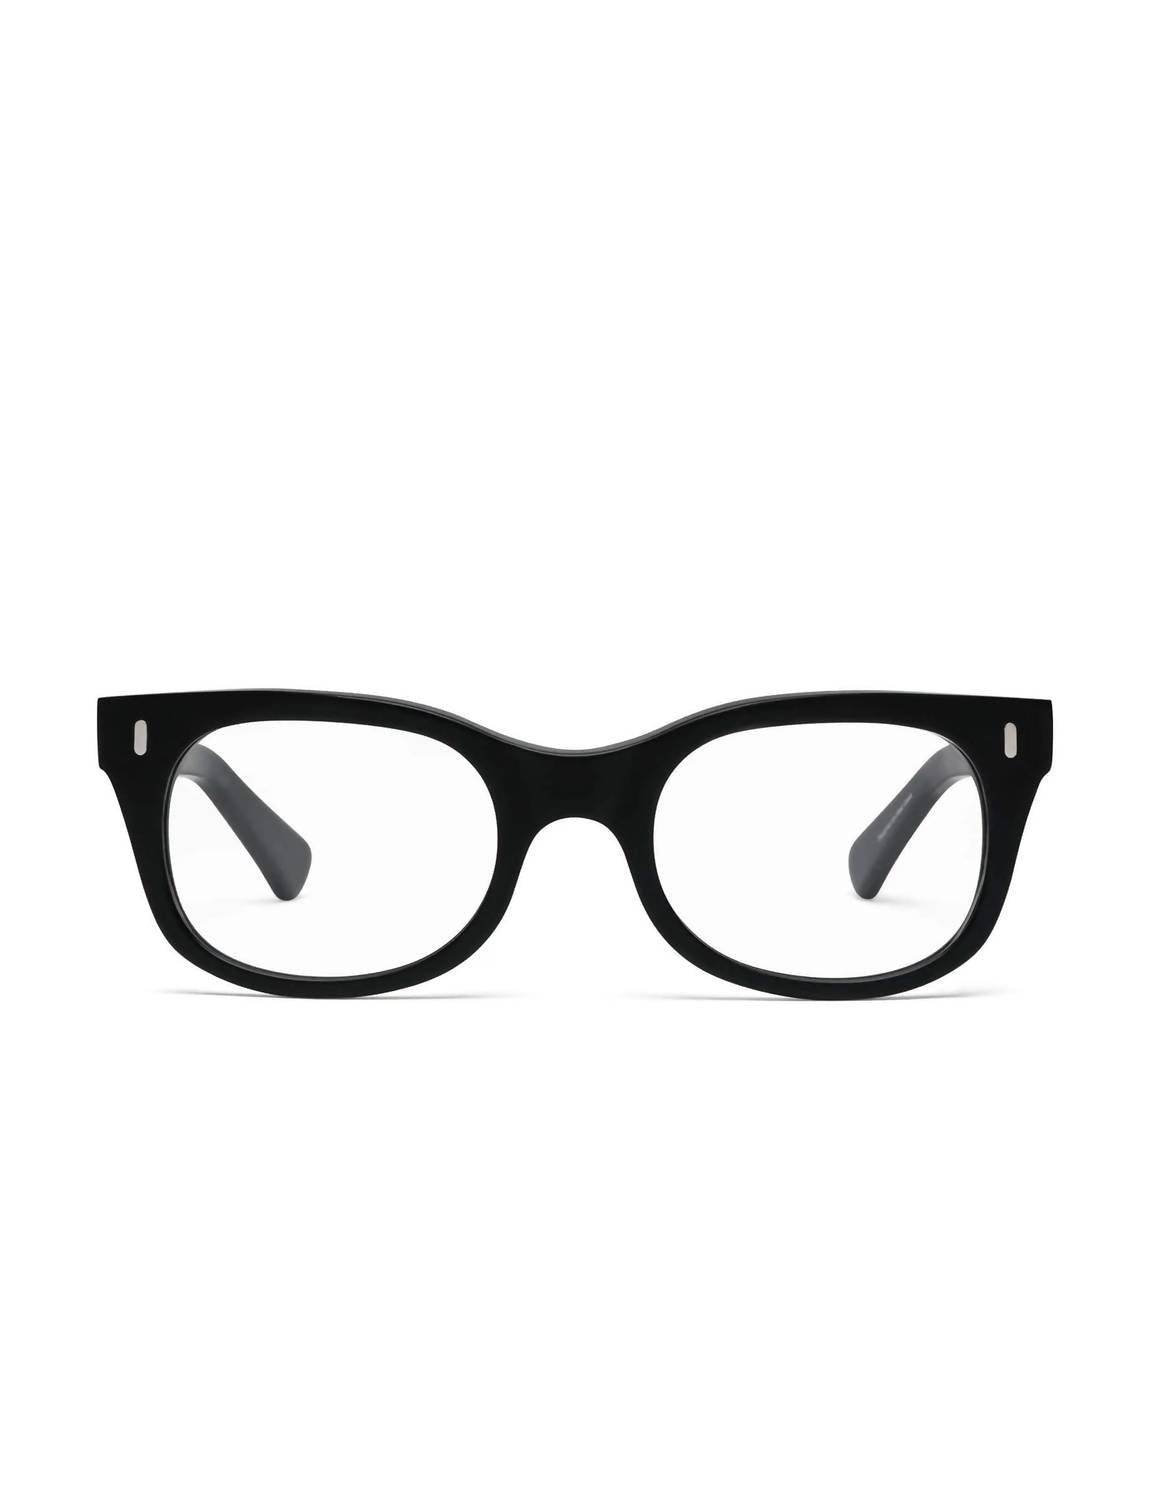 CADDIS Bixby Reading Glasses - 1.50 in Matte Black